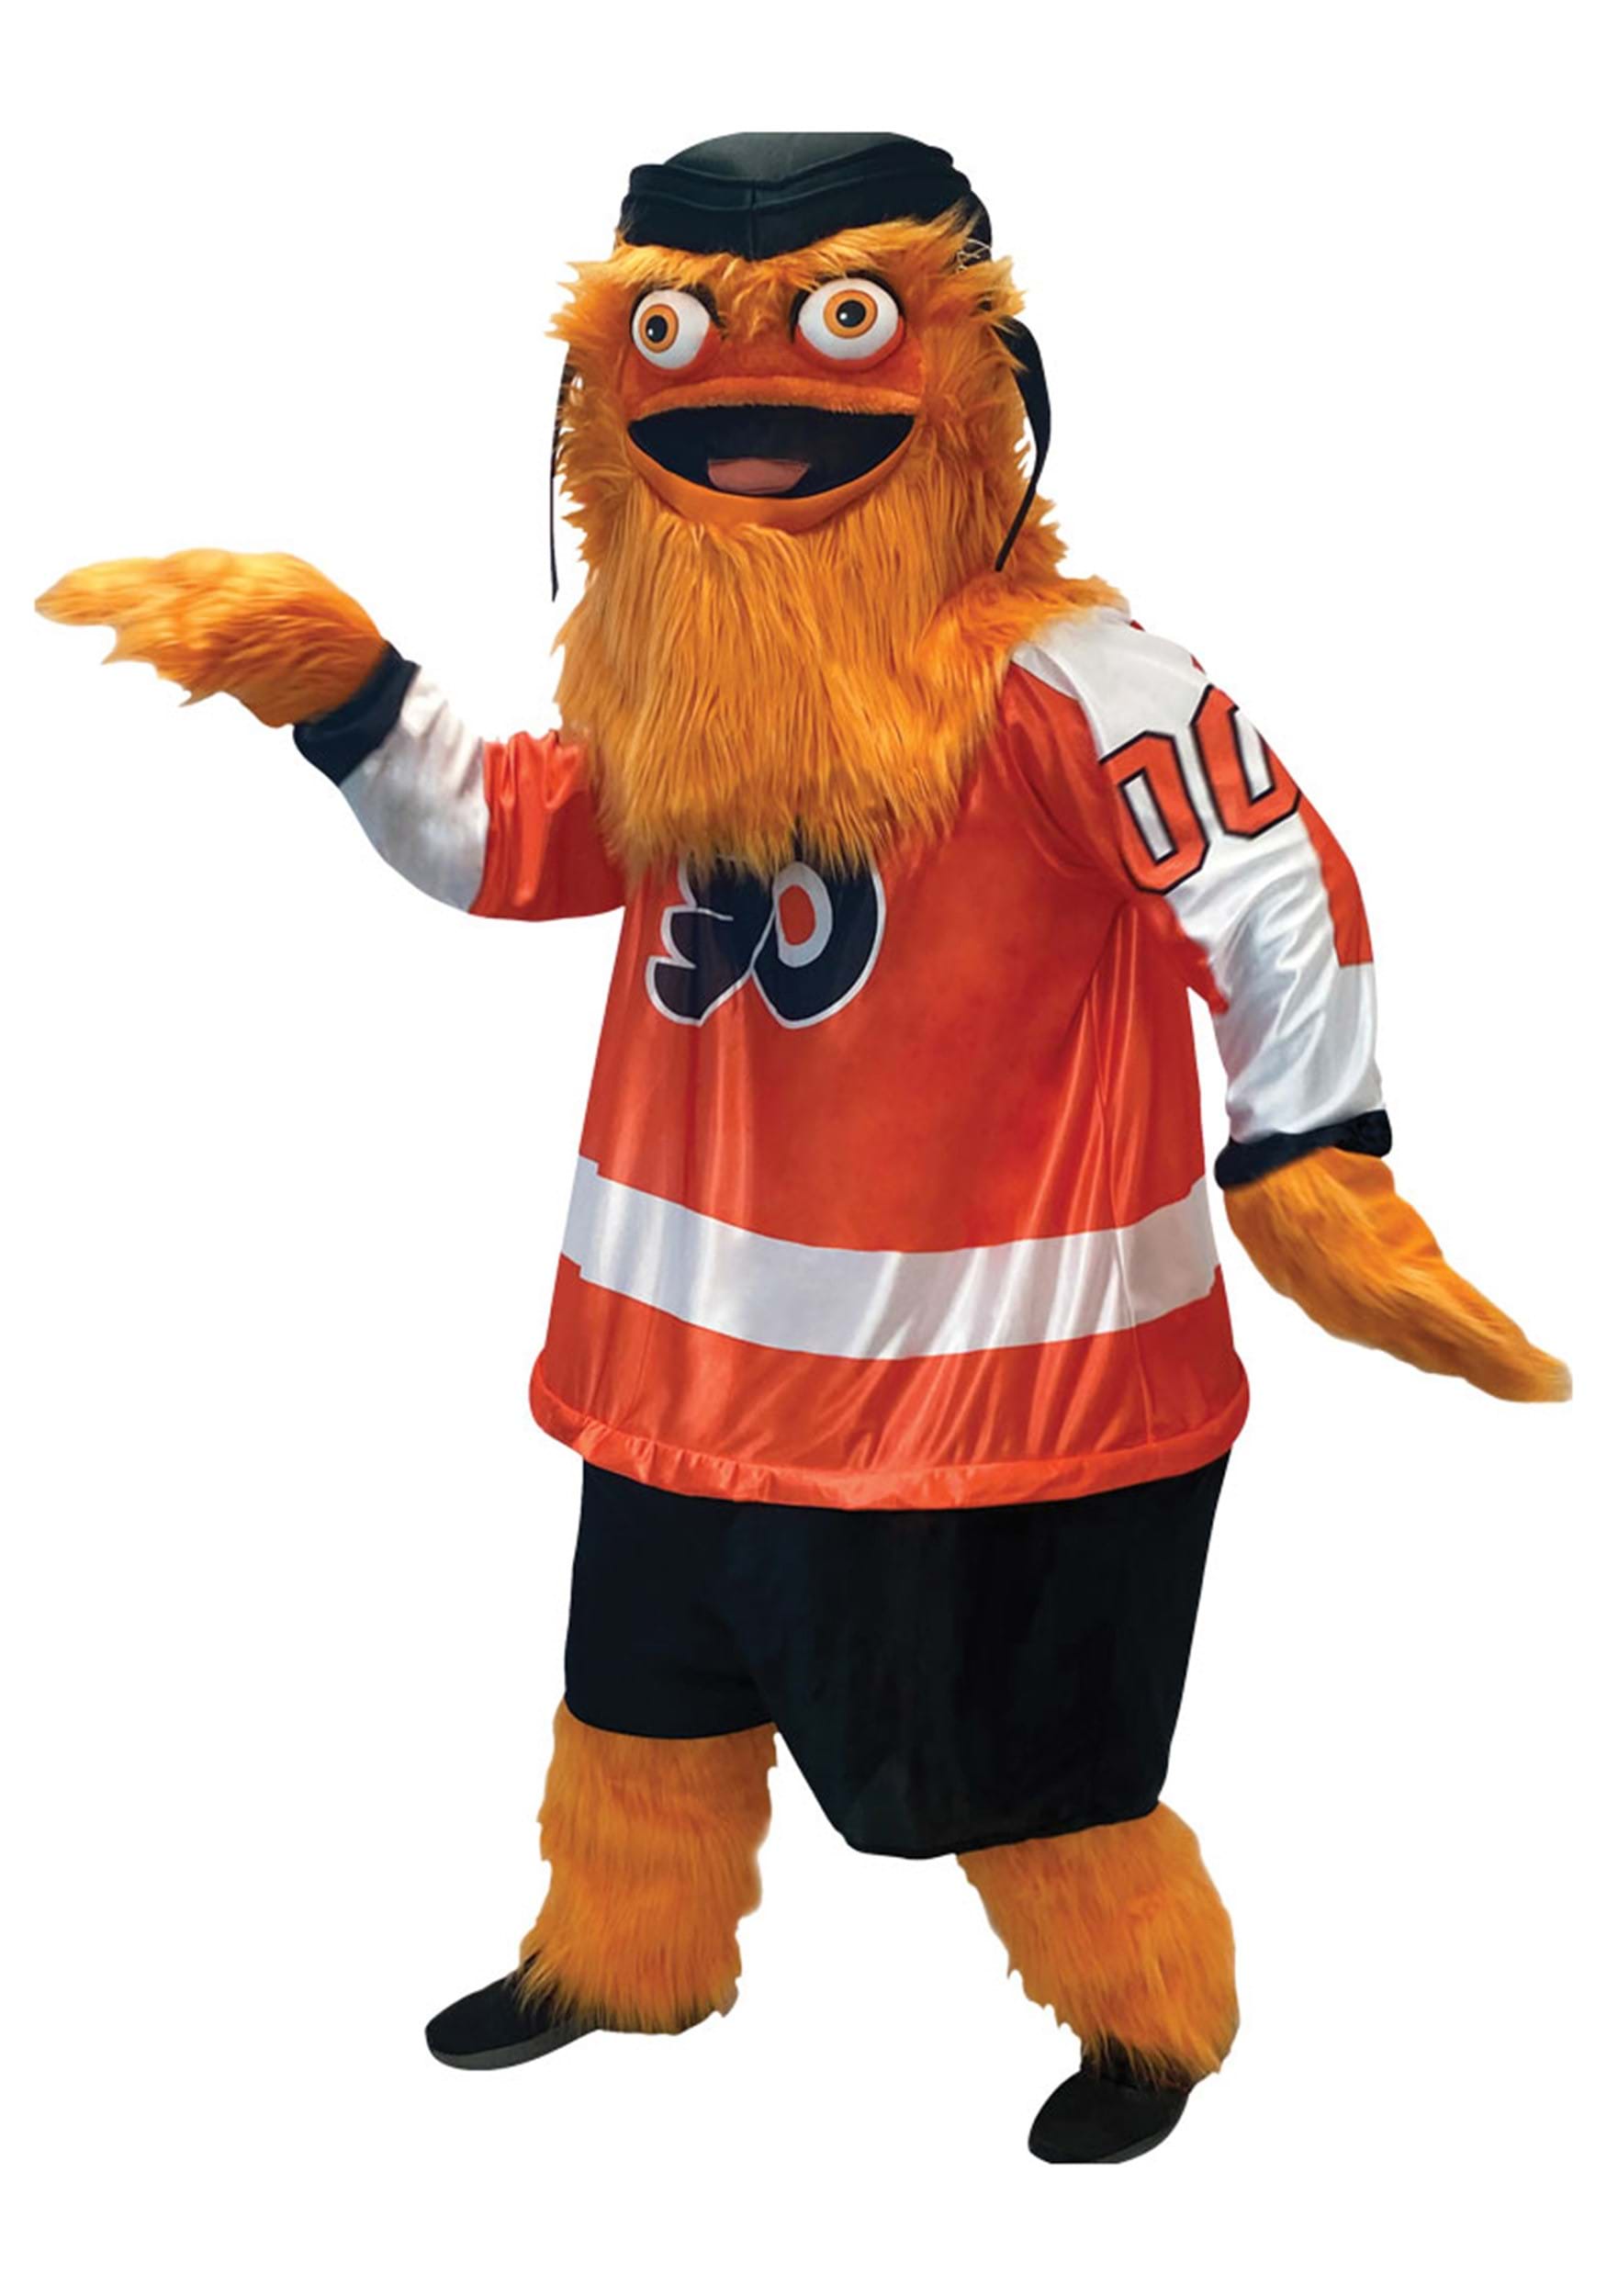 Adult NHL Gritty Mascot Costume , NHL Costumes